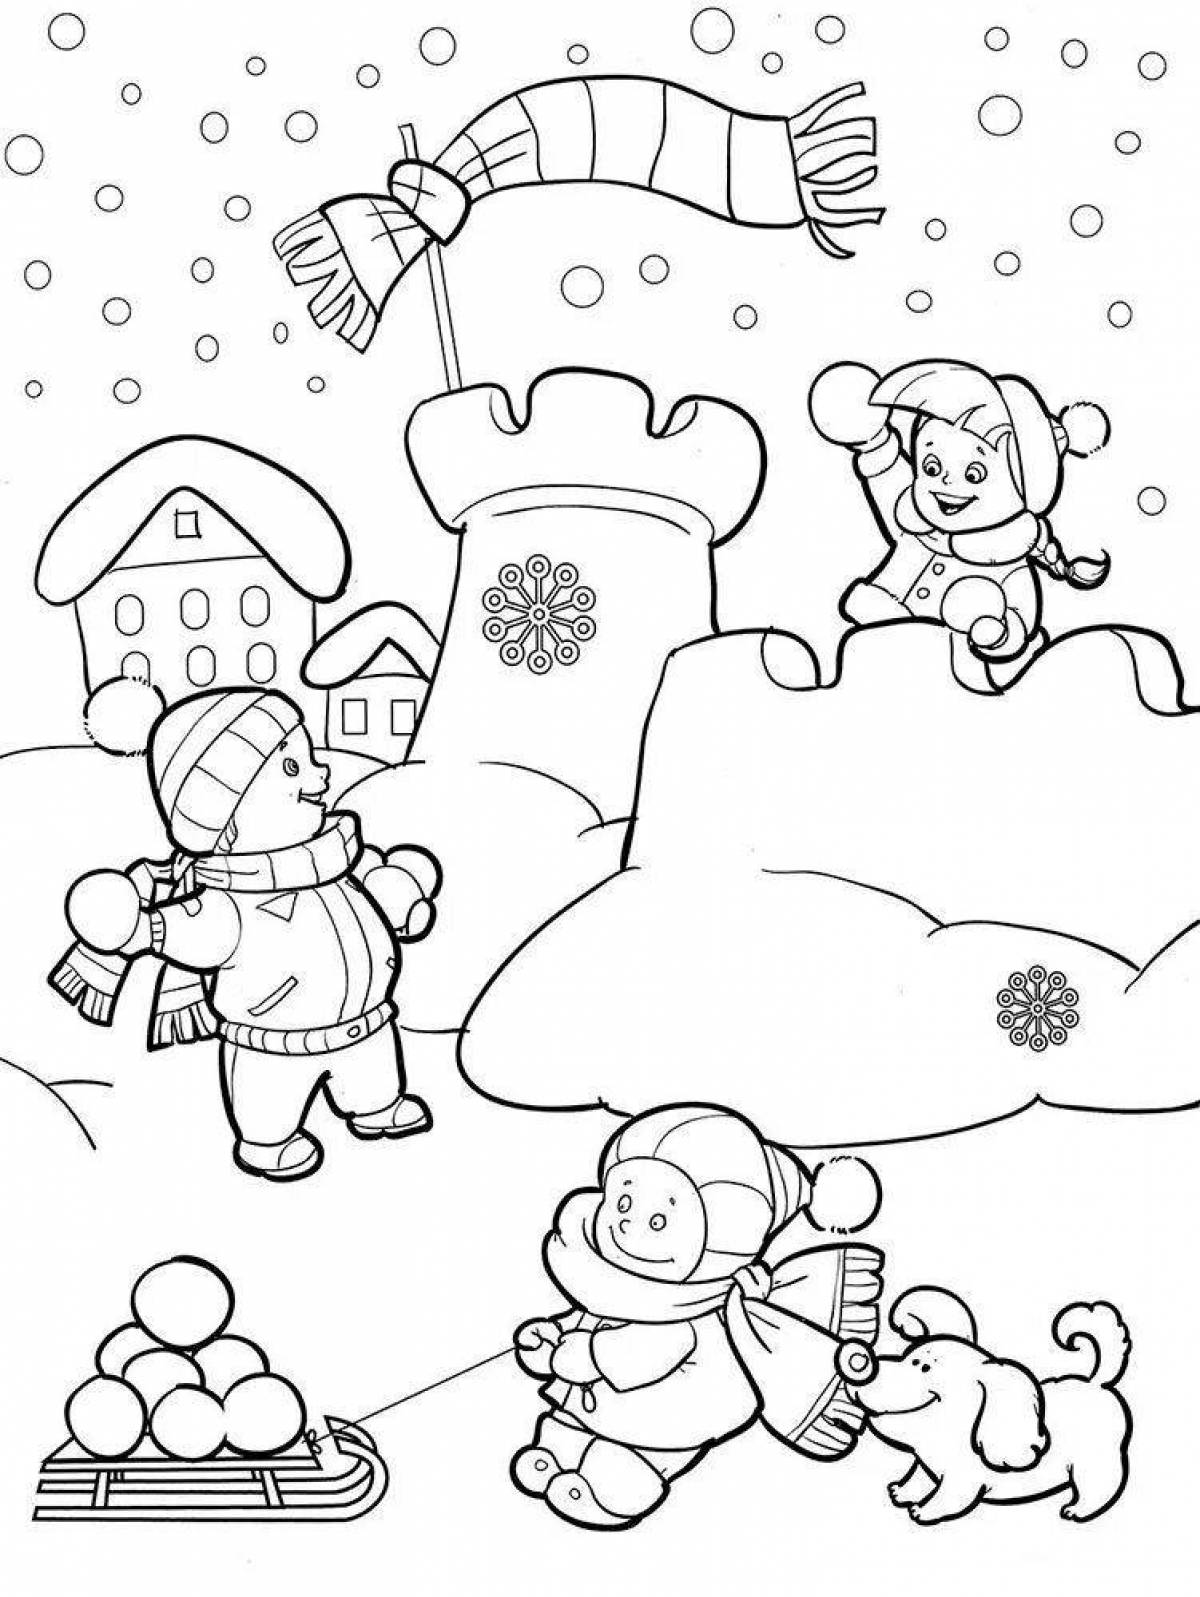 Оживленная игра в снежки раскраска